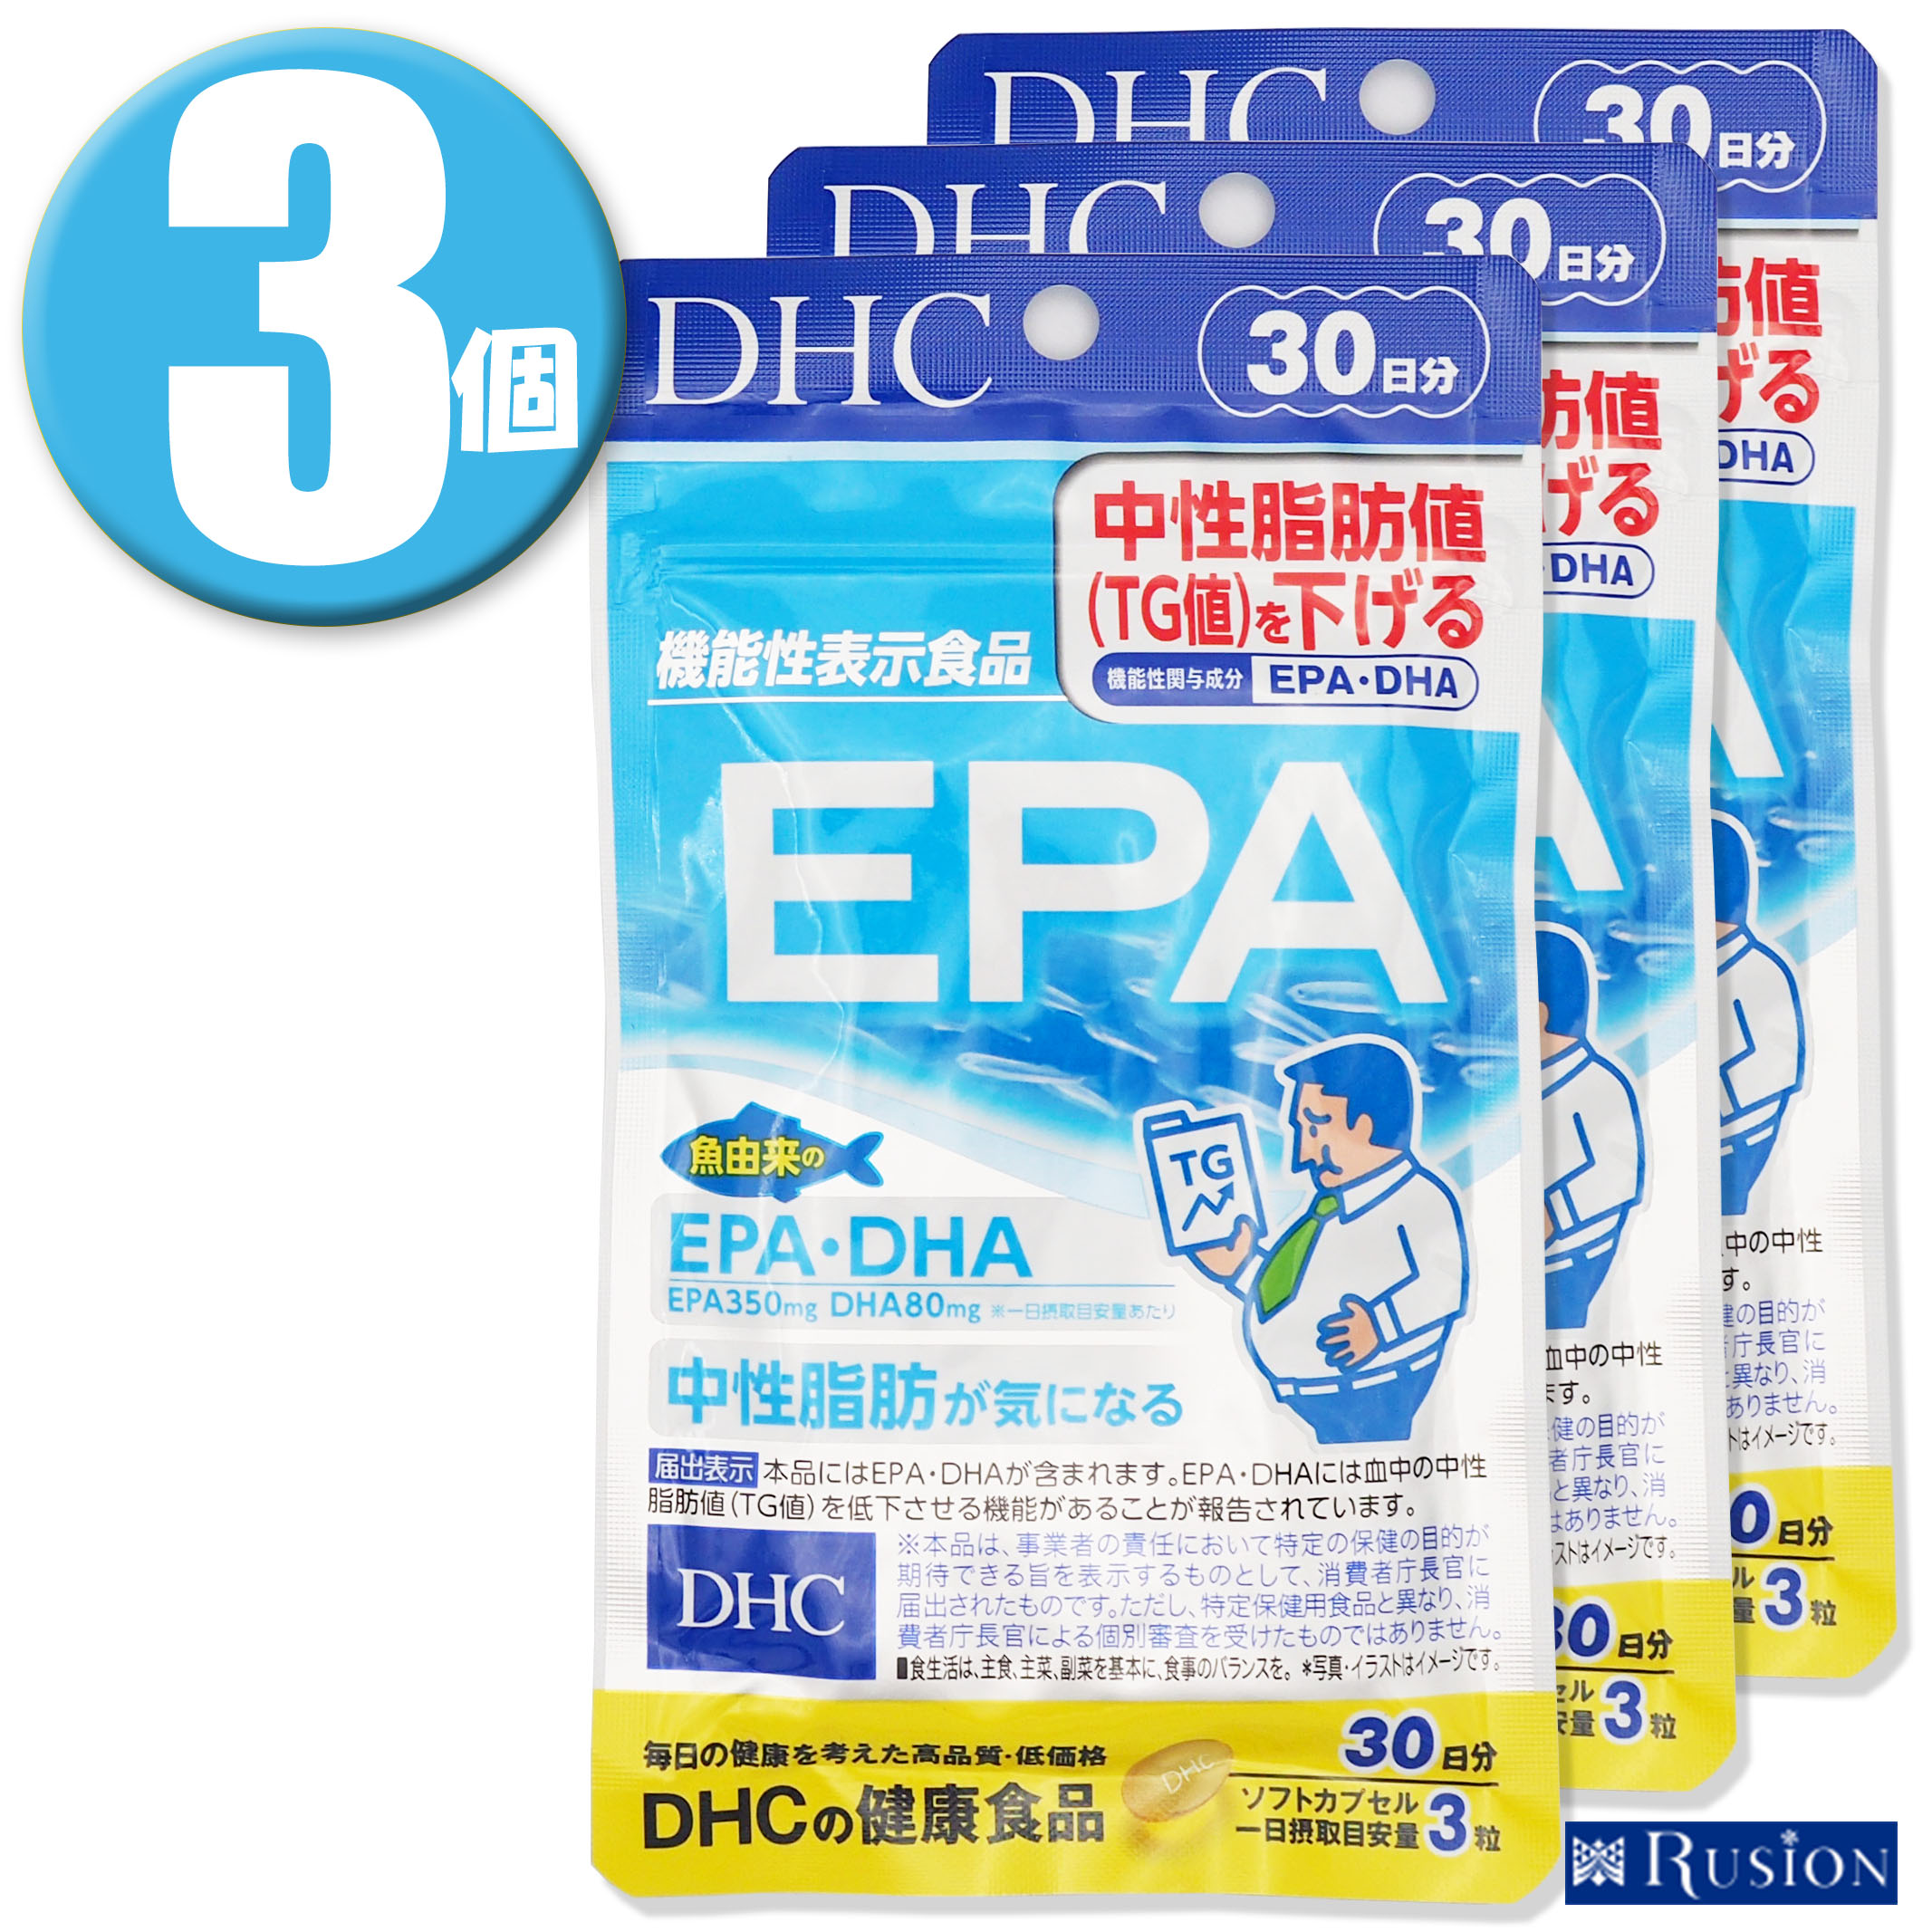 ライフエクステンション スーパーオメガ3プラス EPA / DHA フィッシュオイル ゴマリグナン オリーブエキス オキアミ&アスタキサンチン ソフトジェル 120粒 Life Extension Super Omega-3 Plus EPA / DHA